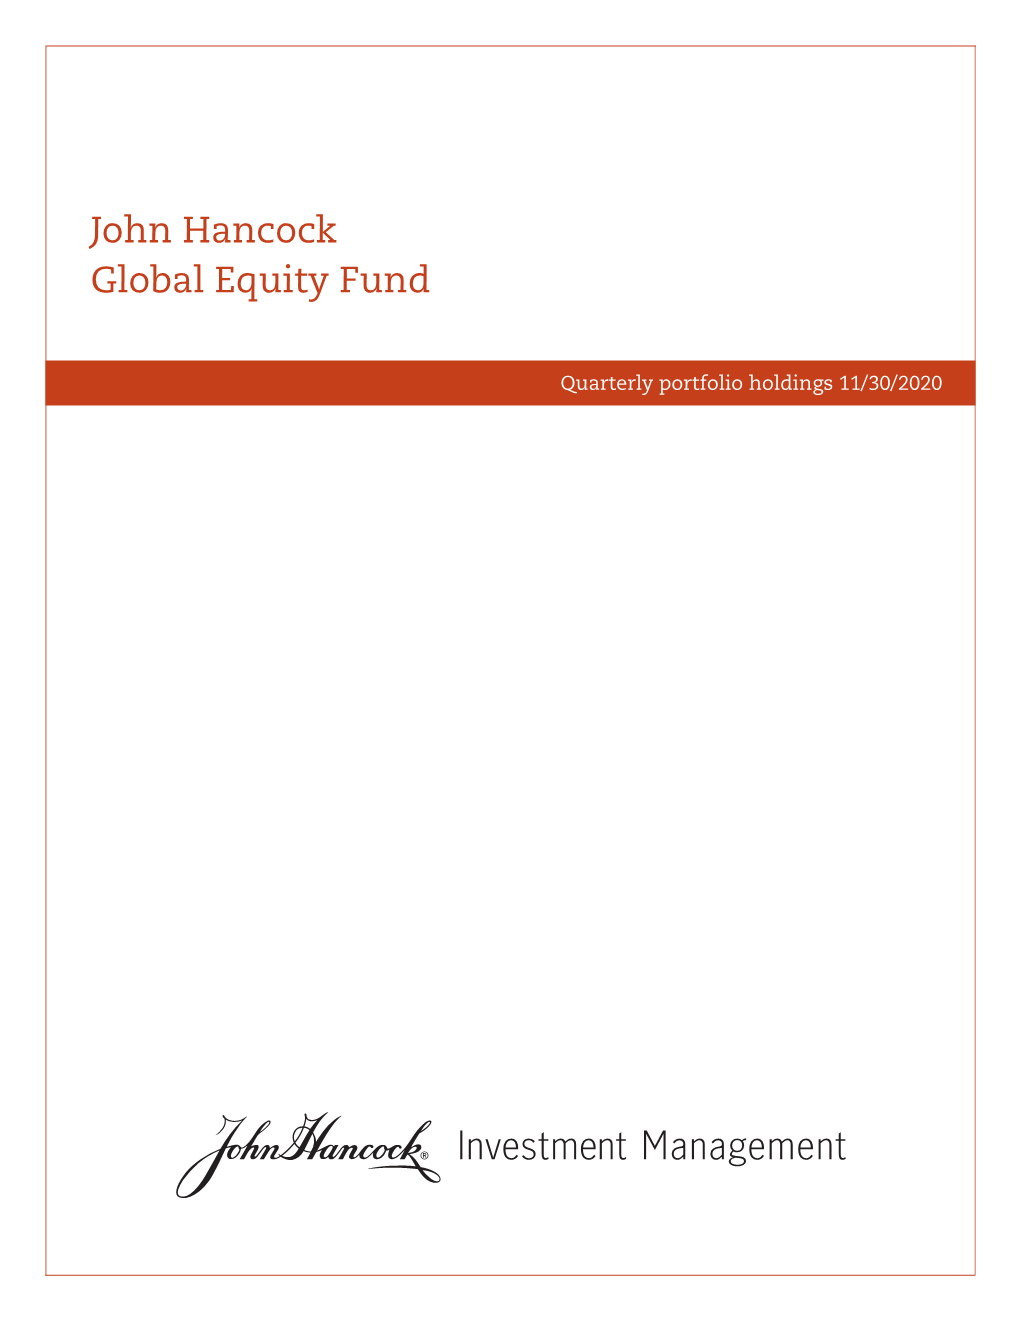 John Hancock Global Equity Fund